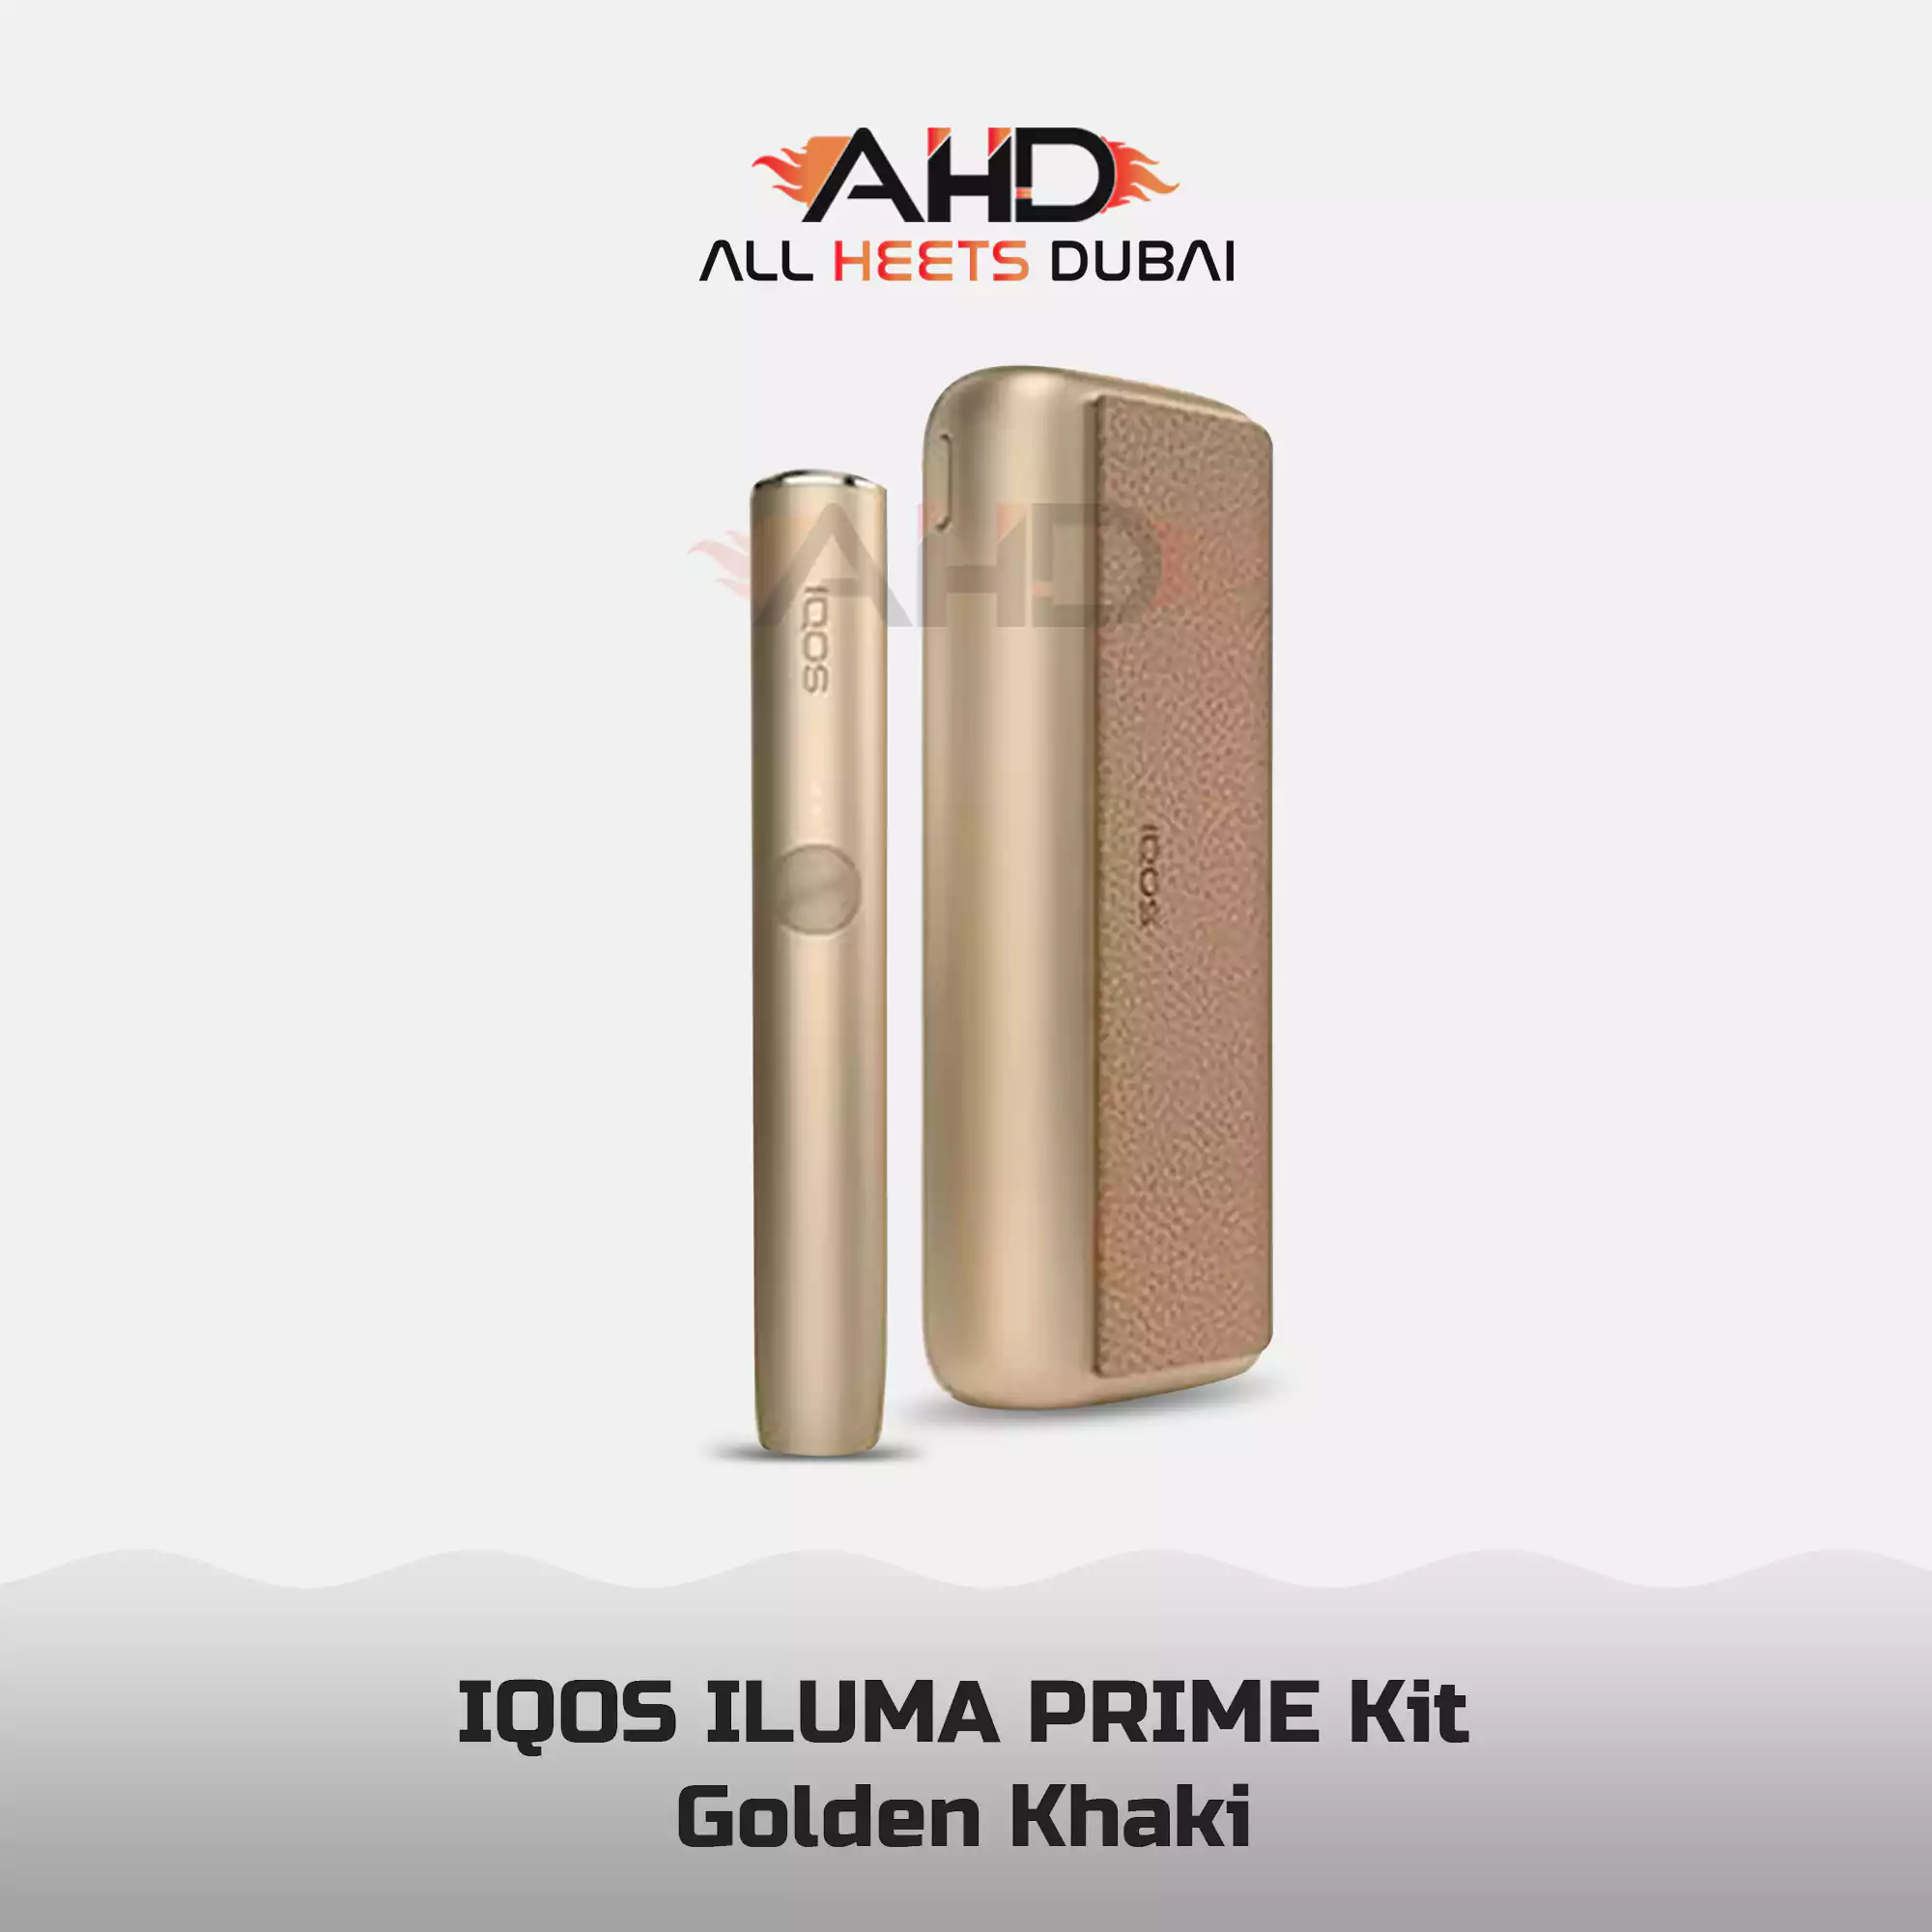 IQOS ILUMA Prime Golden Khaki, Price - AED 440